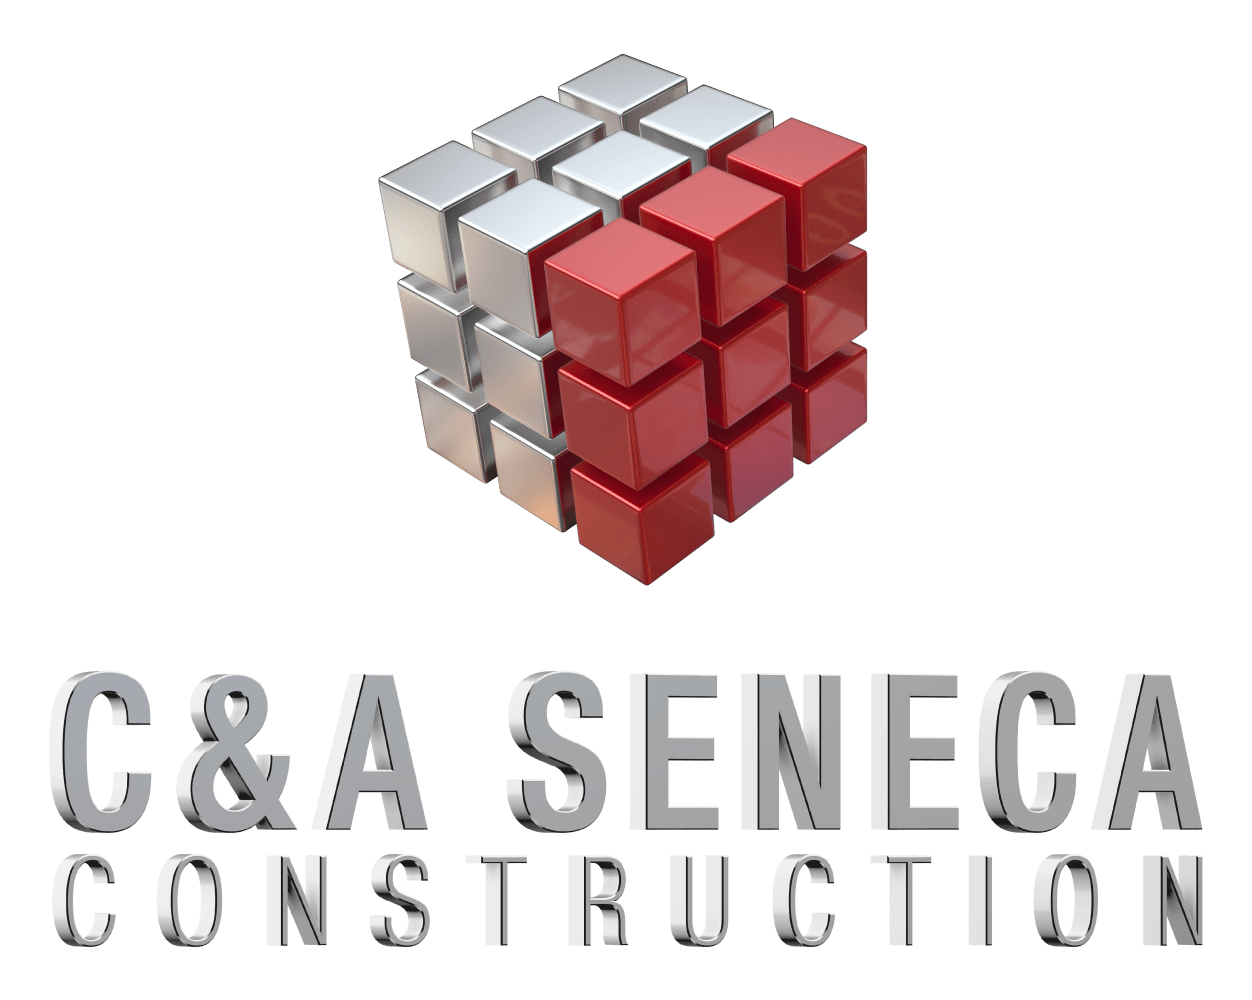 C&A Seneca Construction 88